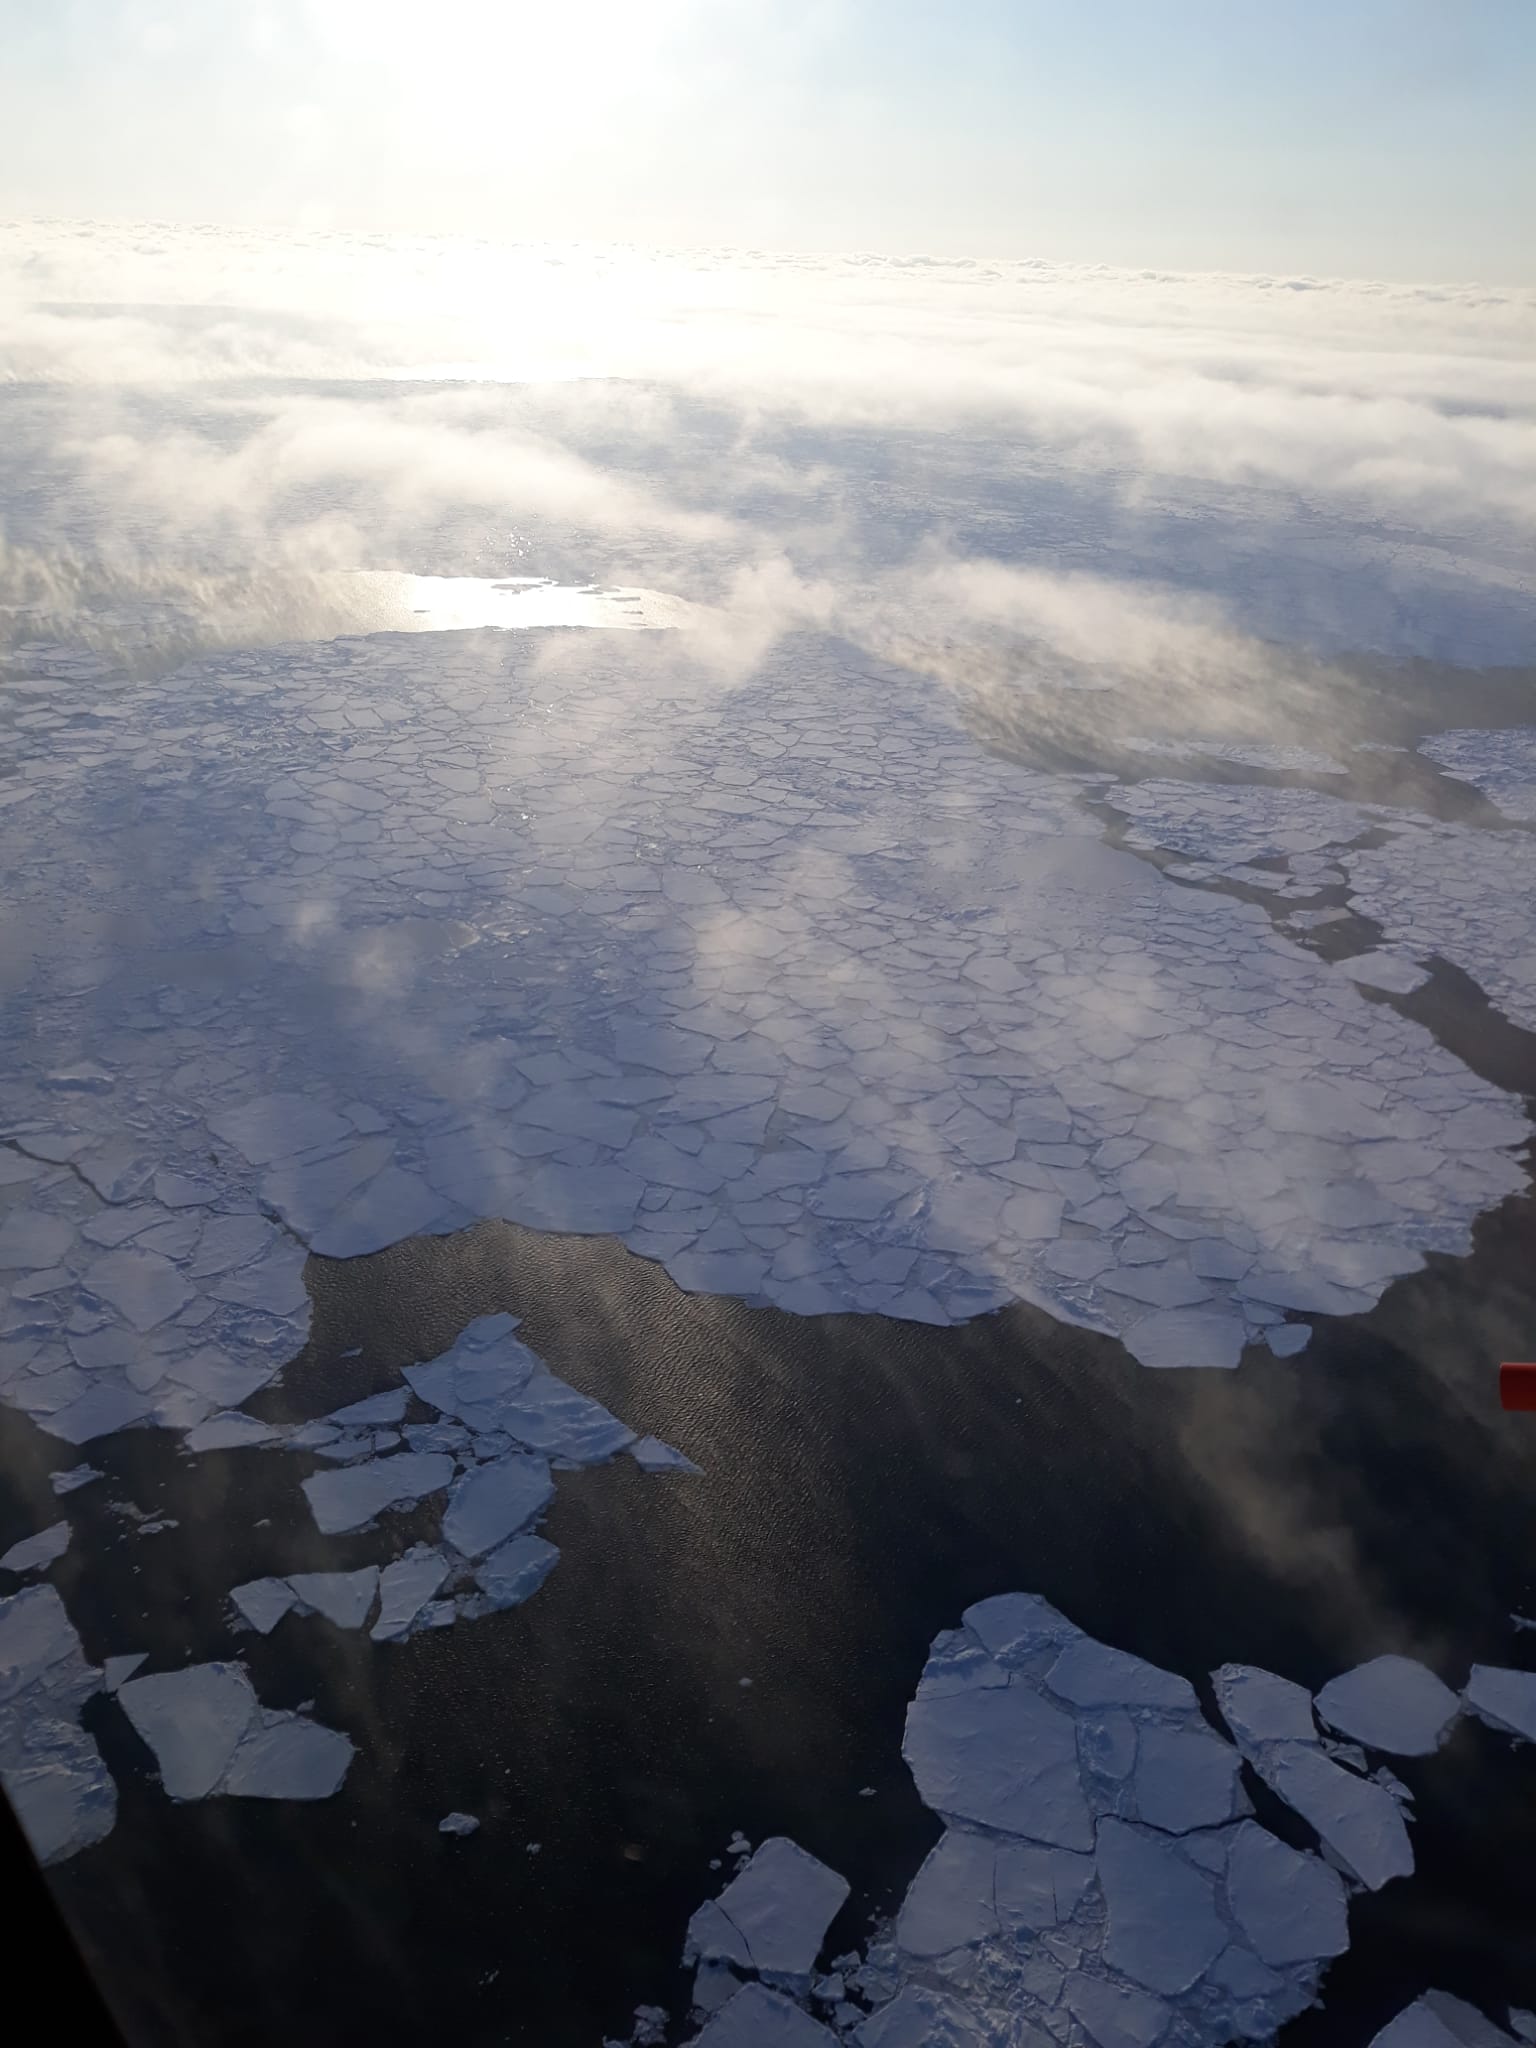 Photo 3: Nuages au dessus de l'océan Arctique et de la banquise - (crédit : R. Dupuy)